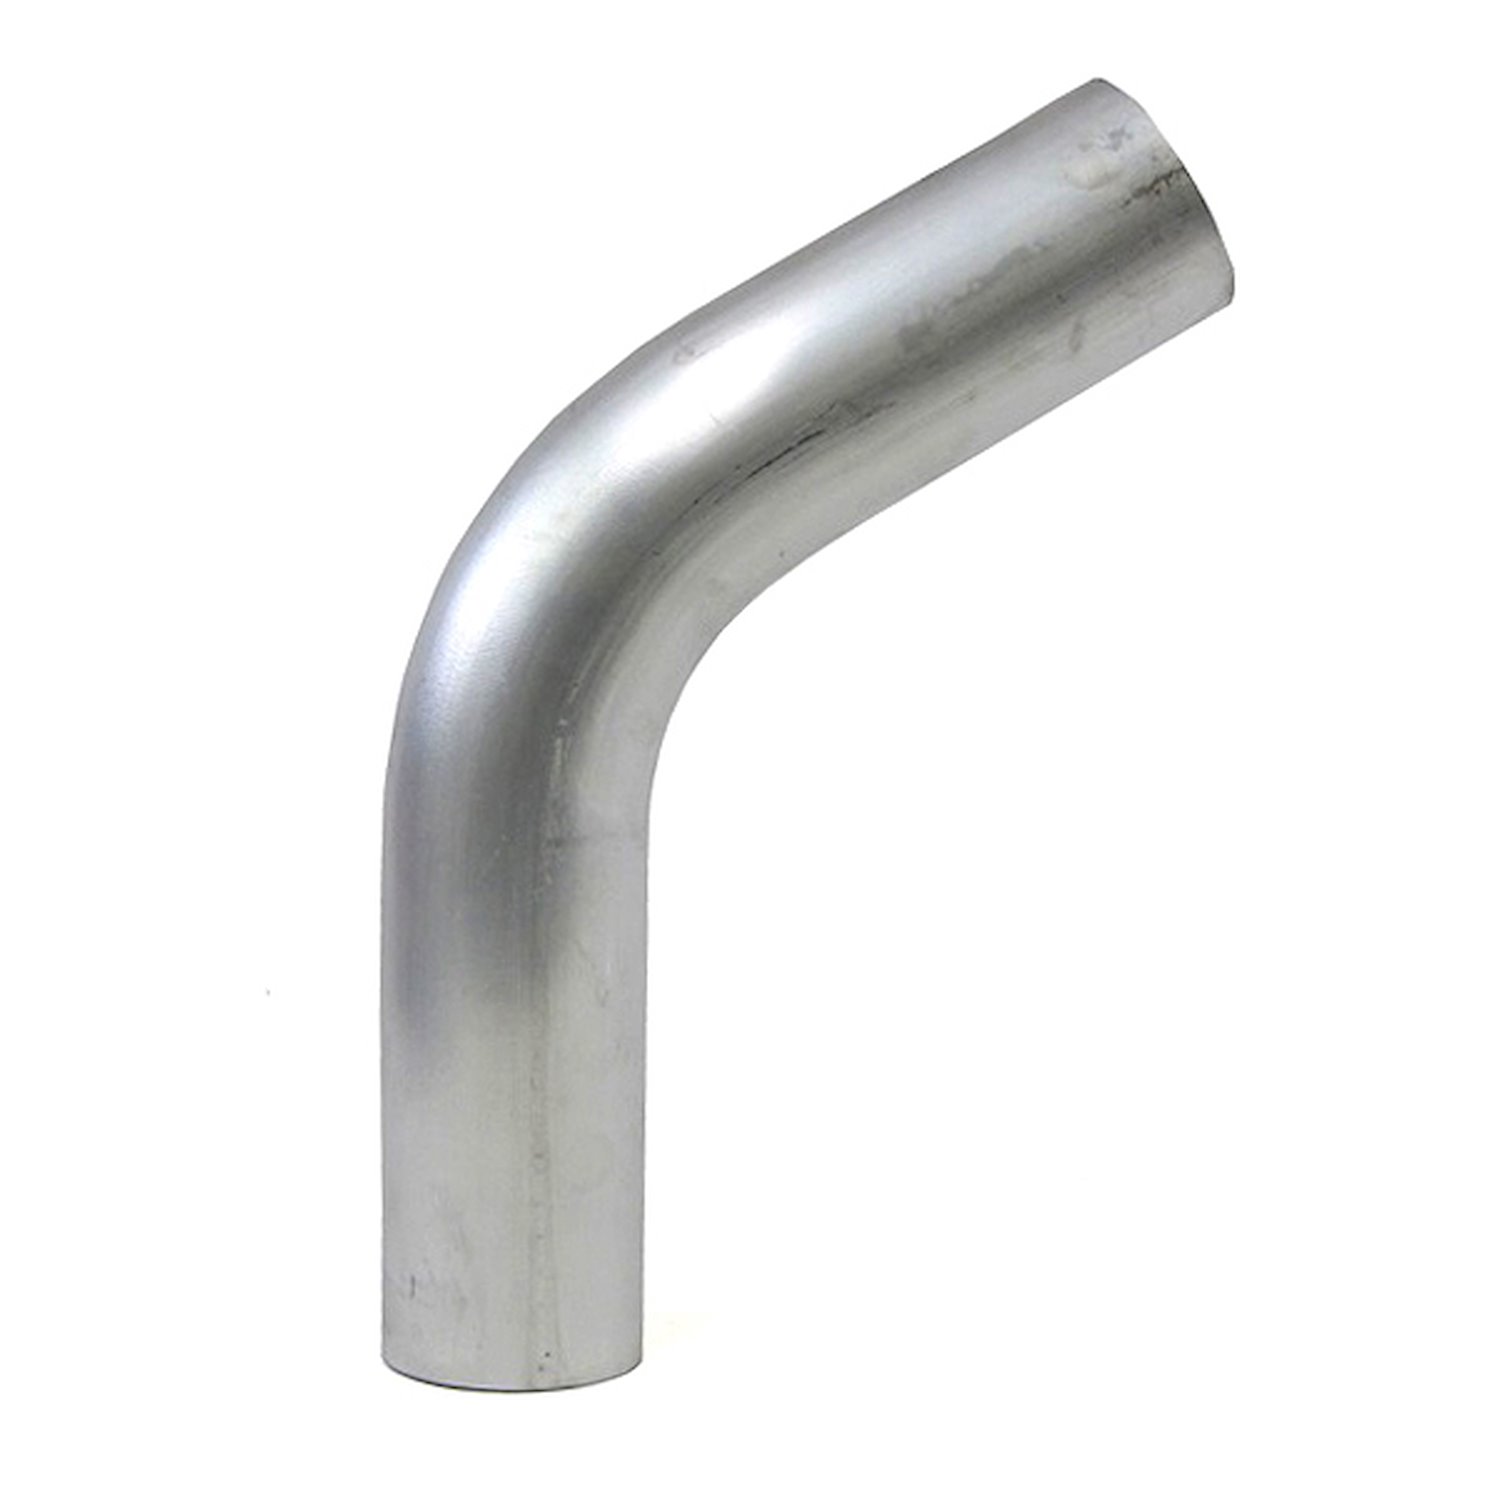 AT60-225-CLR-225 Aluminum Elbow Tube, 6061 Aluminum, 60-Degree Bend Elbow Tubing, 2-1/4 in. OD, Large Radius, 2-1/4 in. CLR